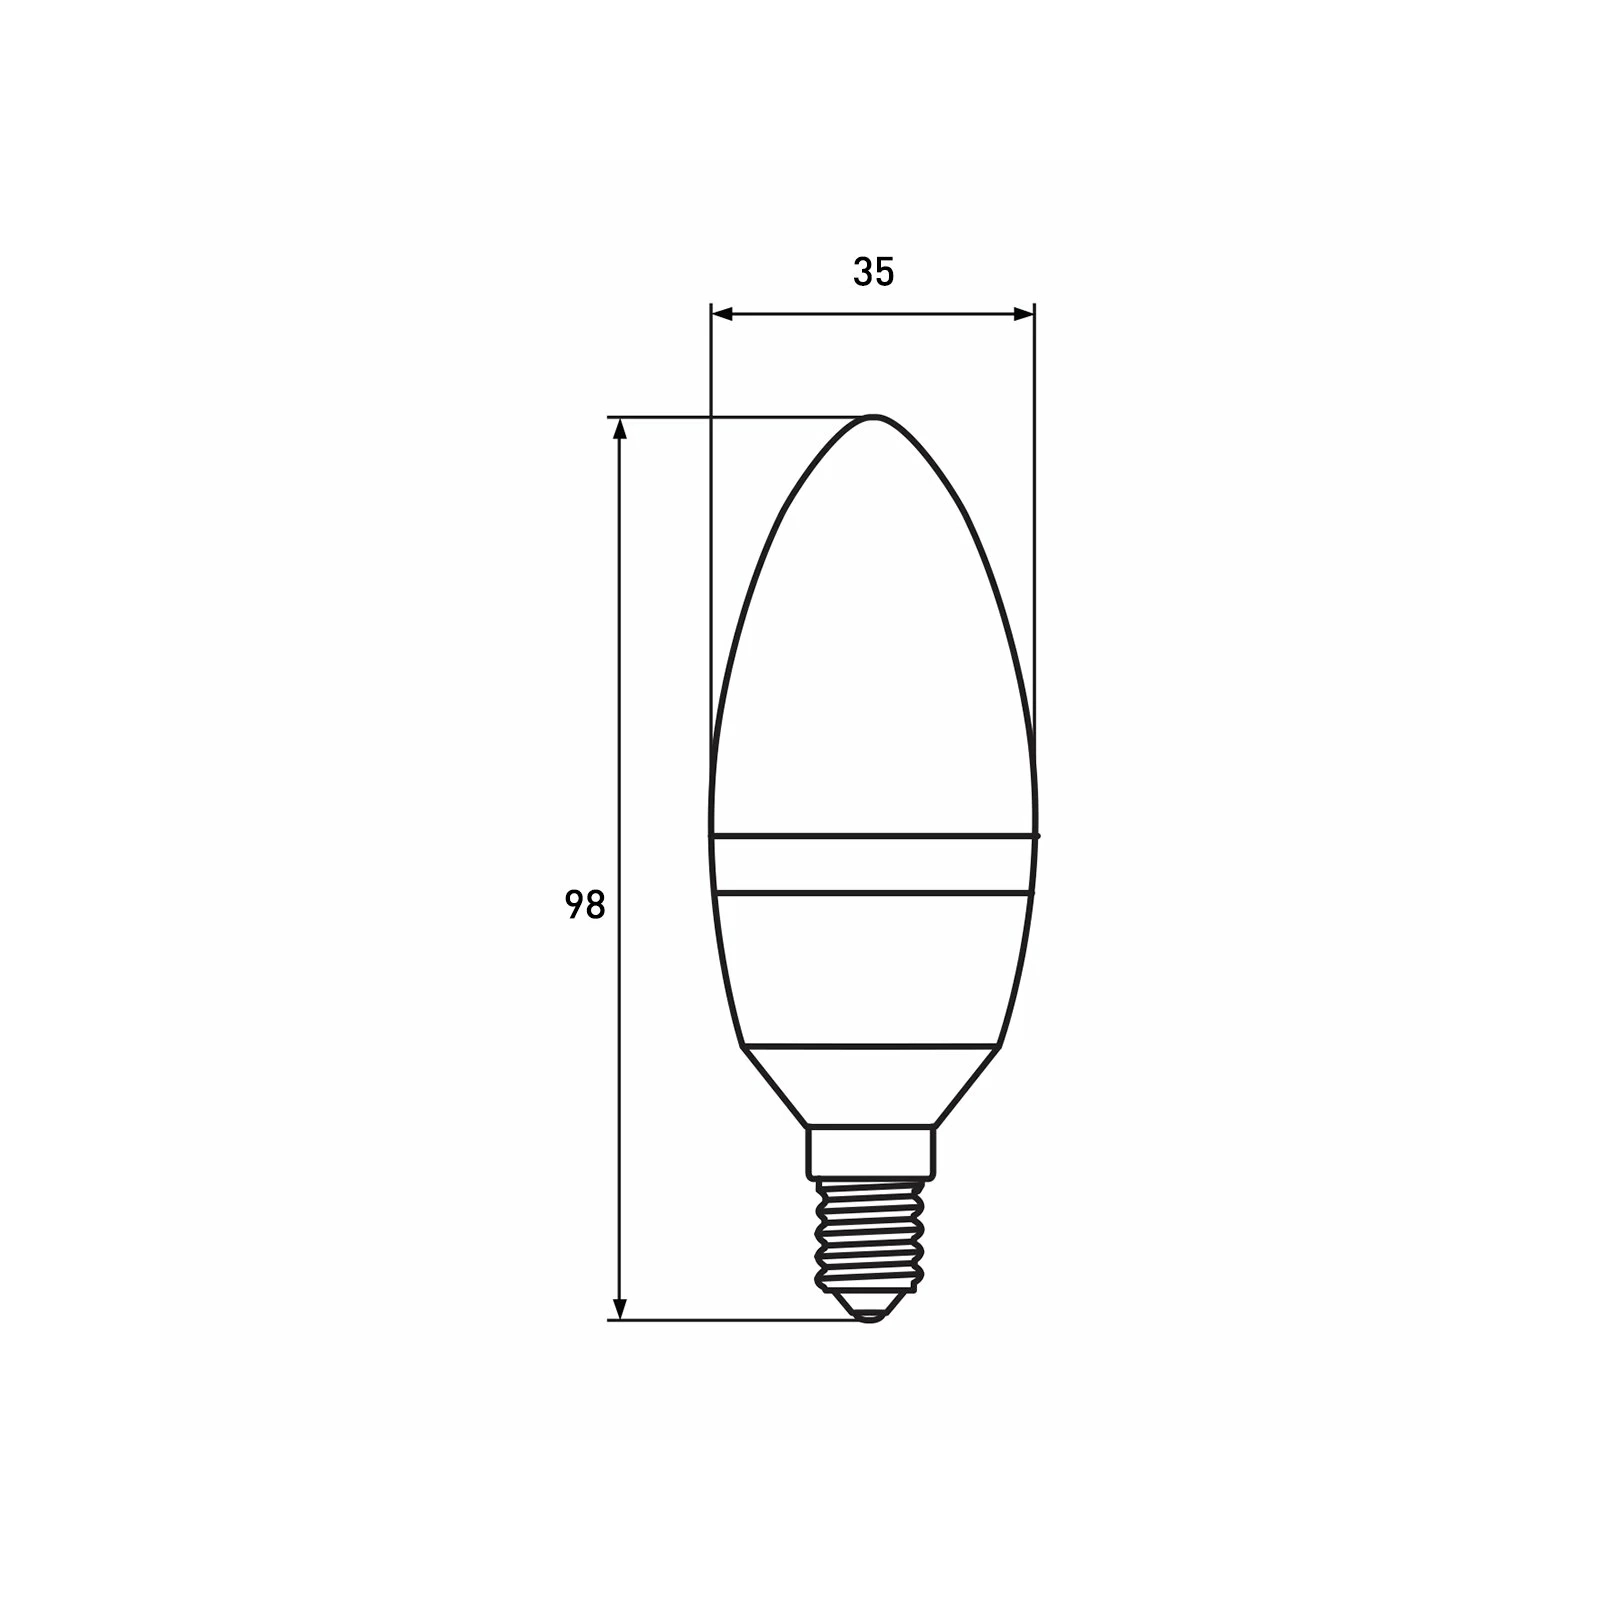 Лампочка Eurolamp LED CL 6W 620 Lm E14 3000K deco 2шт (MLP-LED-CL-06143(Amber)) зображення 3